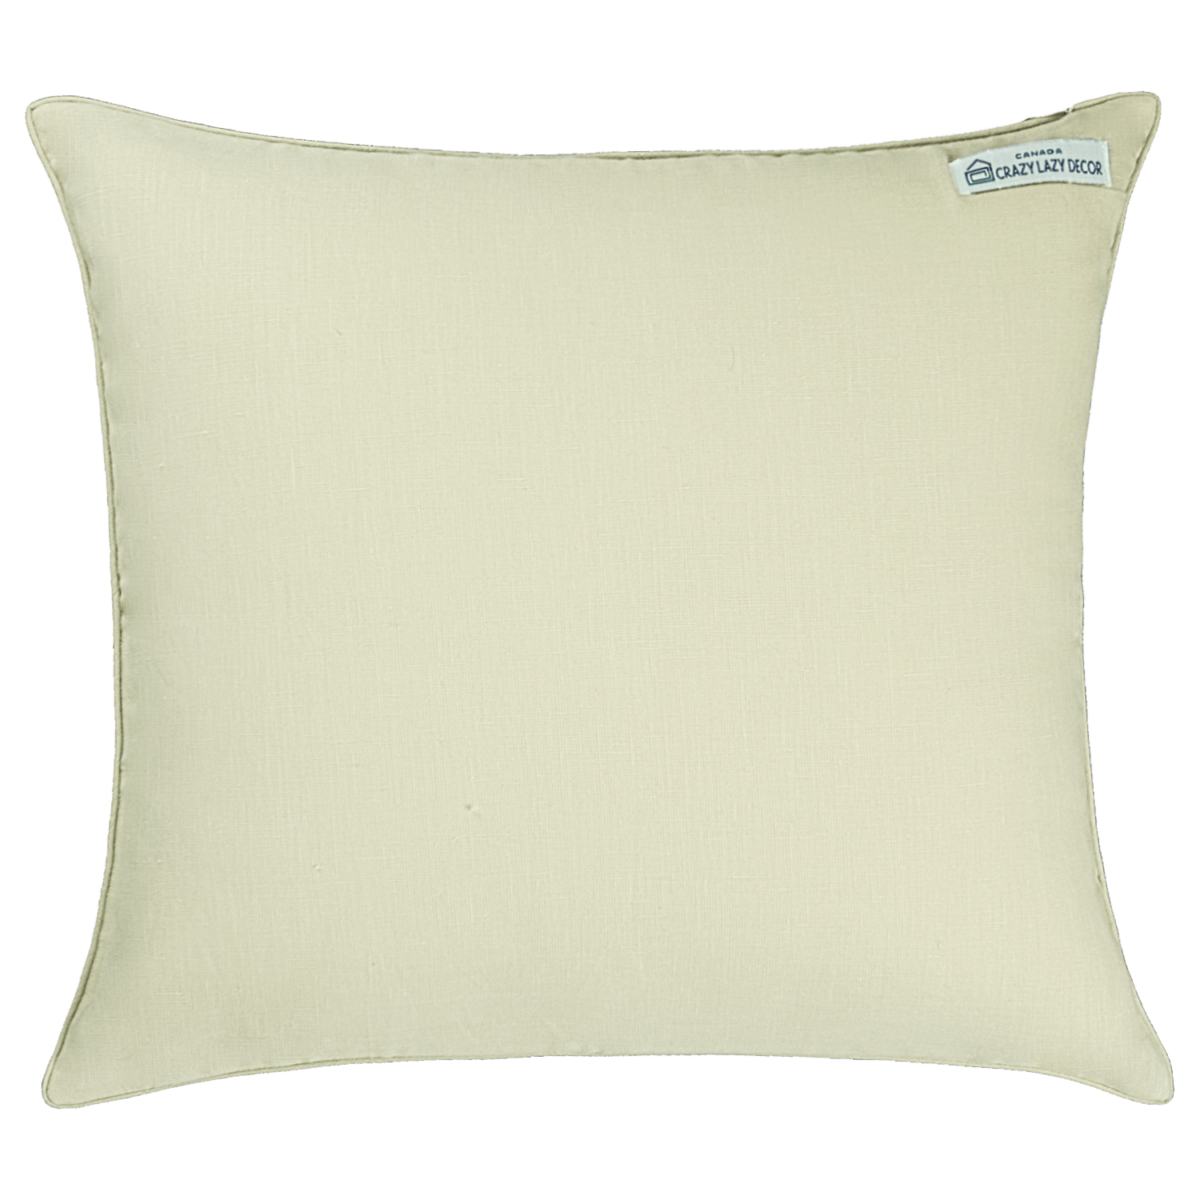 Toucon-decorative pillow 16" X 16" linen